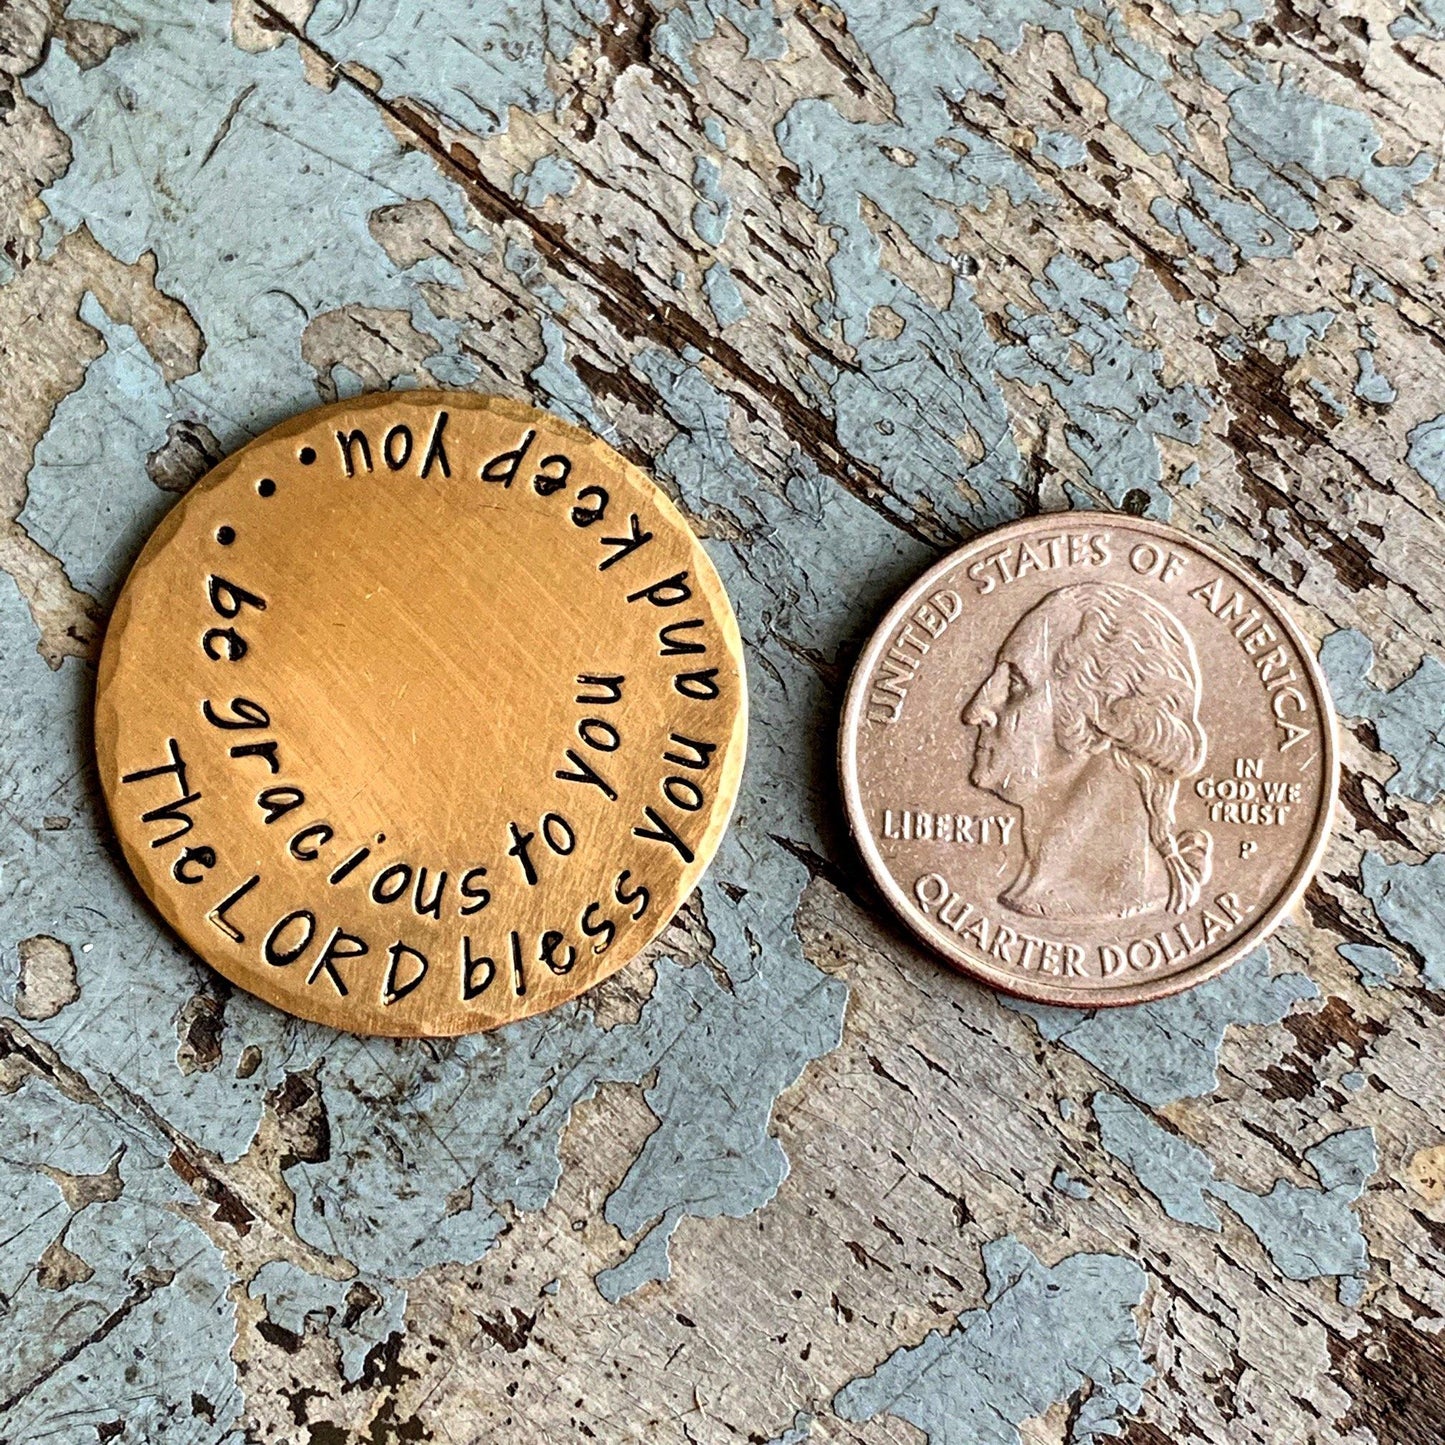 1 1/4" diameter brass coin